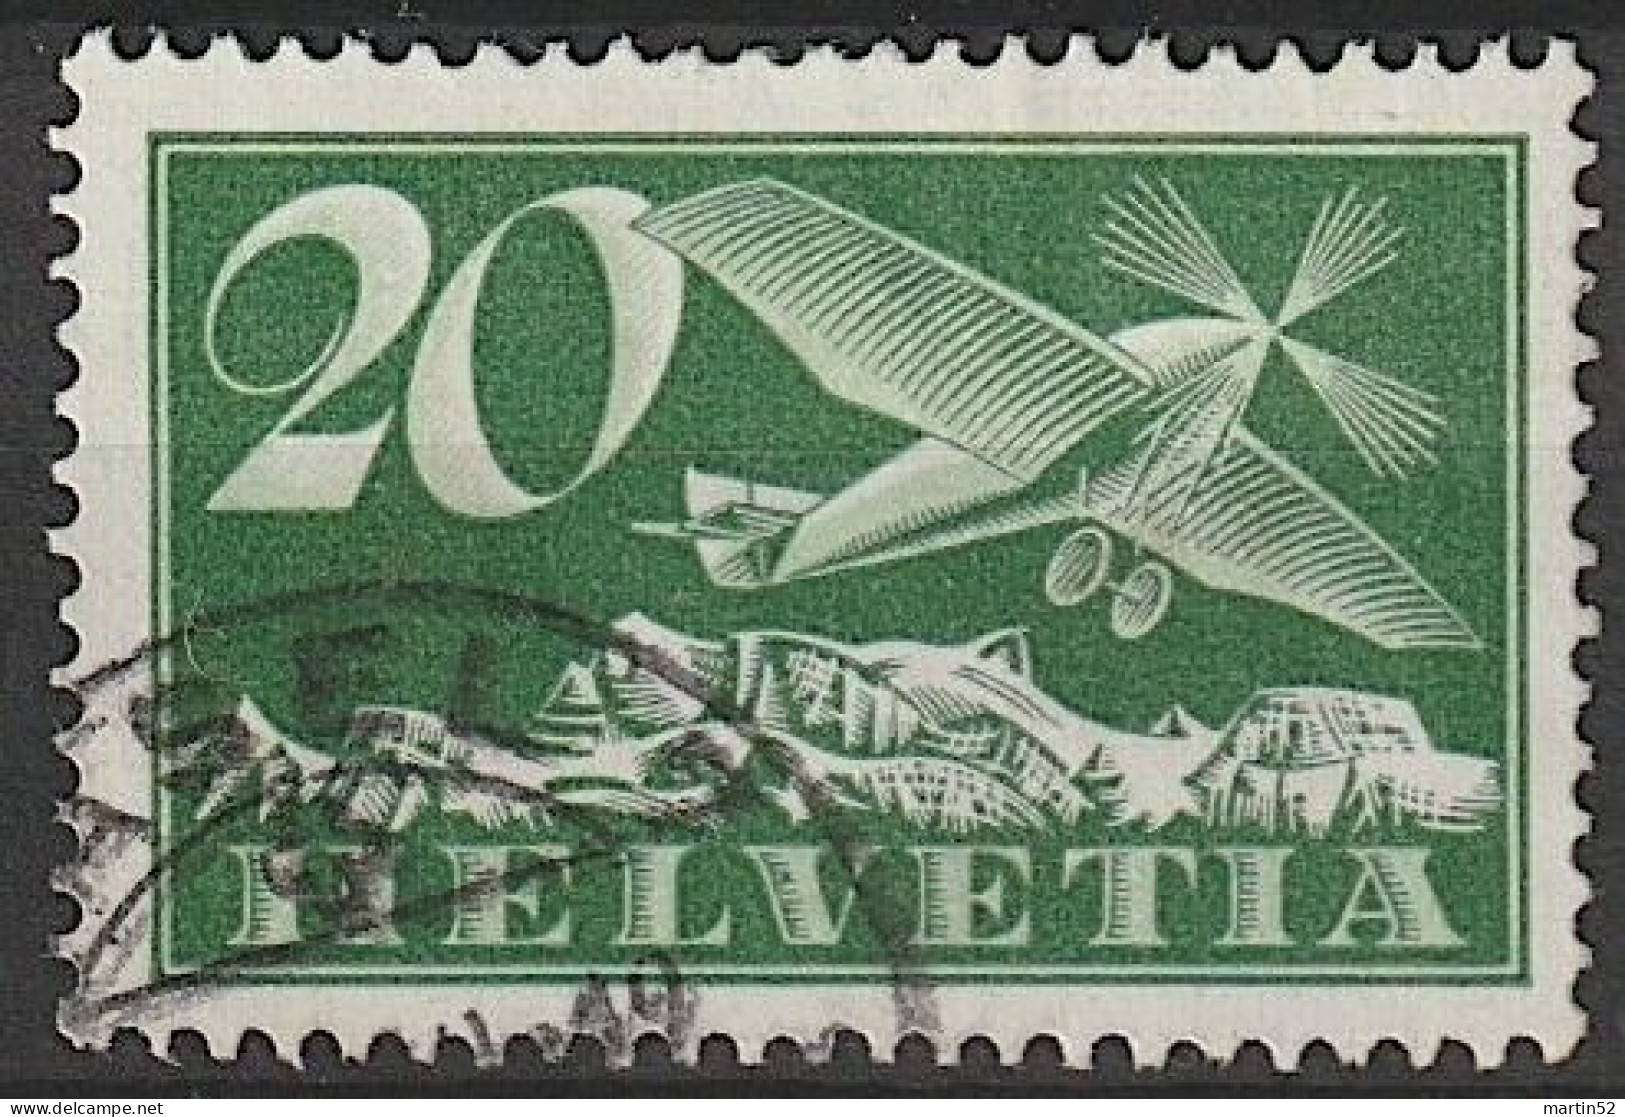 Schweiz Suisse 1925: Alpen-Flug / Avion Et Alpes Zu Flug 4 Mi 213 Yv PA 9 Mit Eck-Stempel Von BASEL 19 (Zu CHF 11.00) - Usati